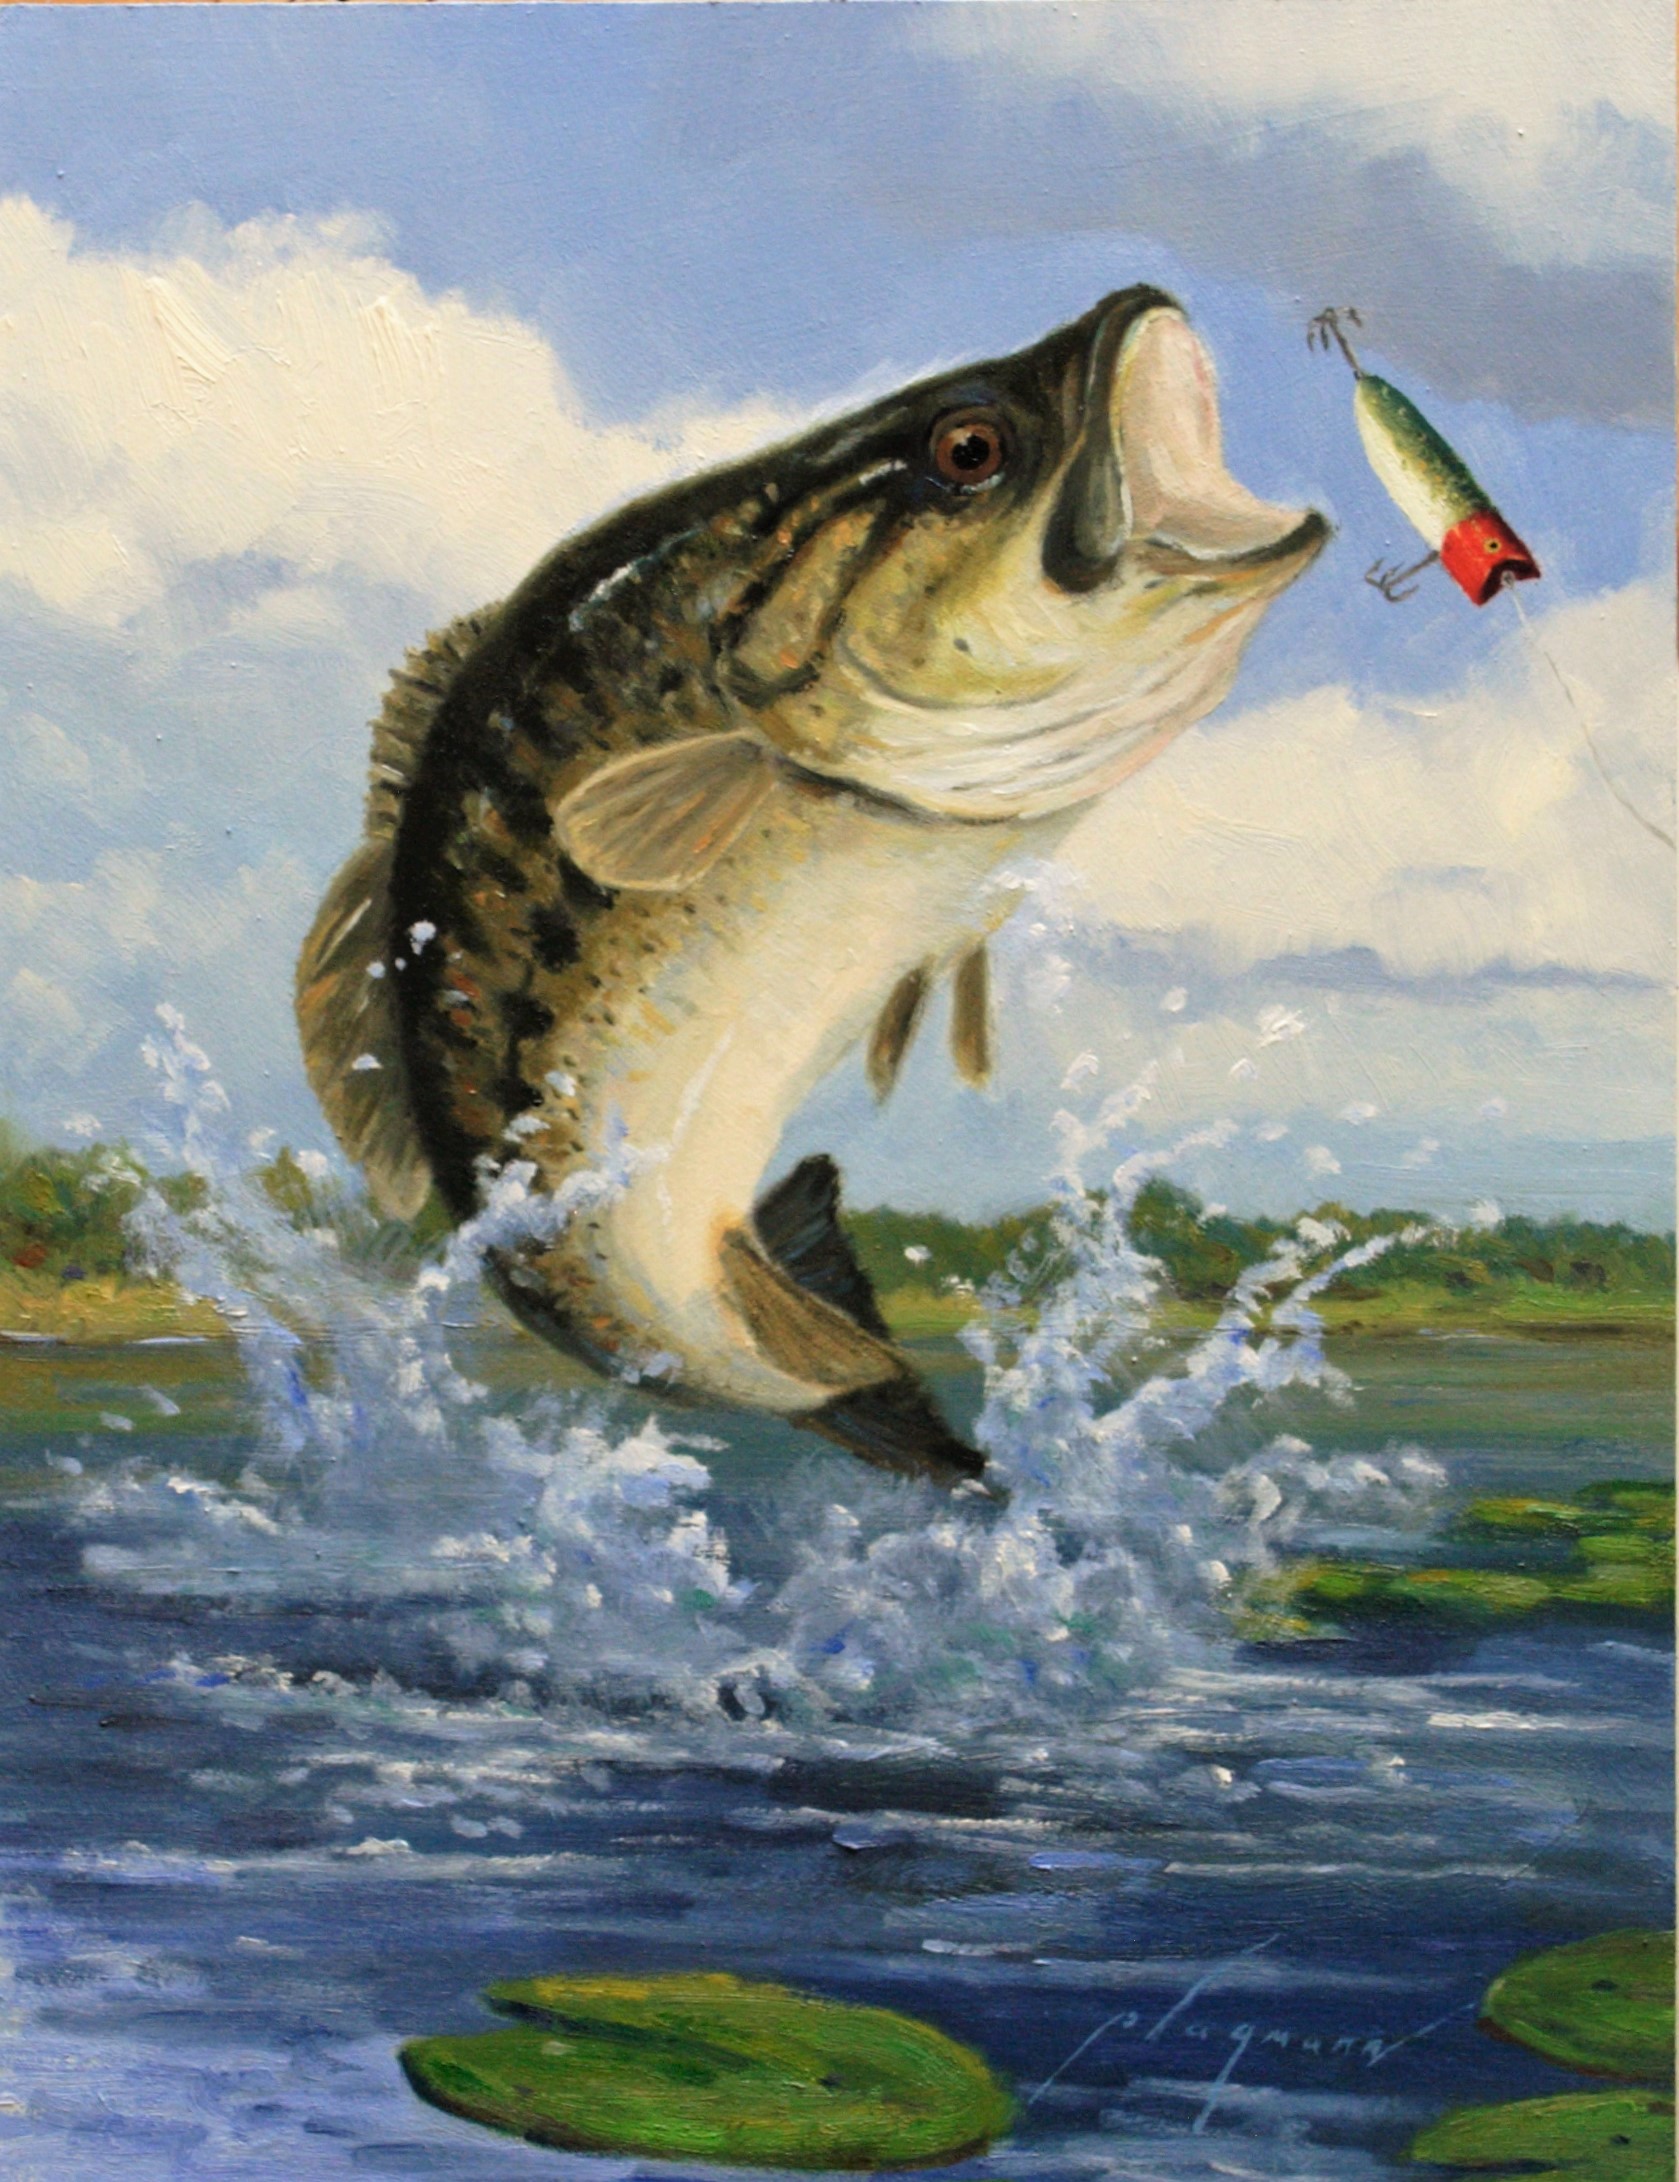 bass fish jumping